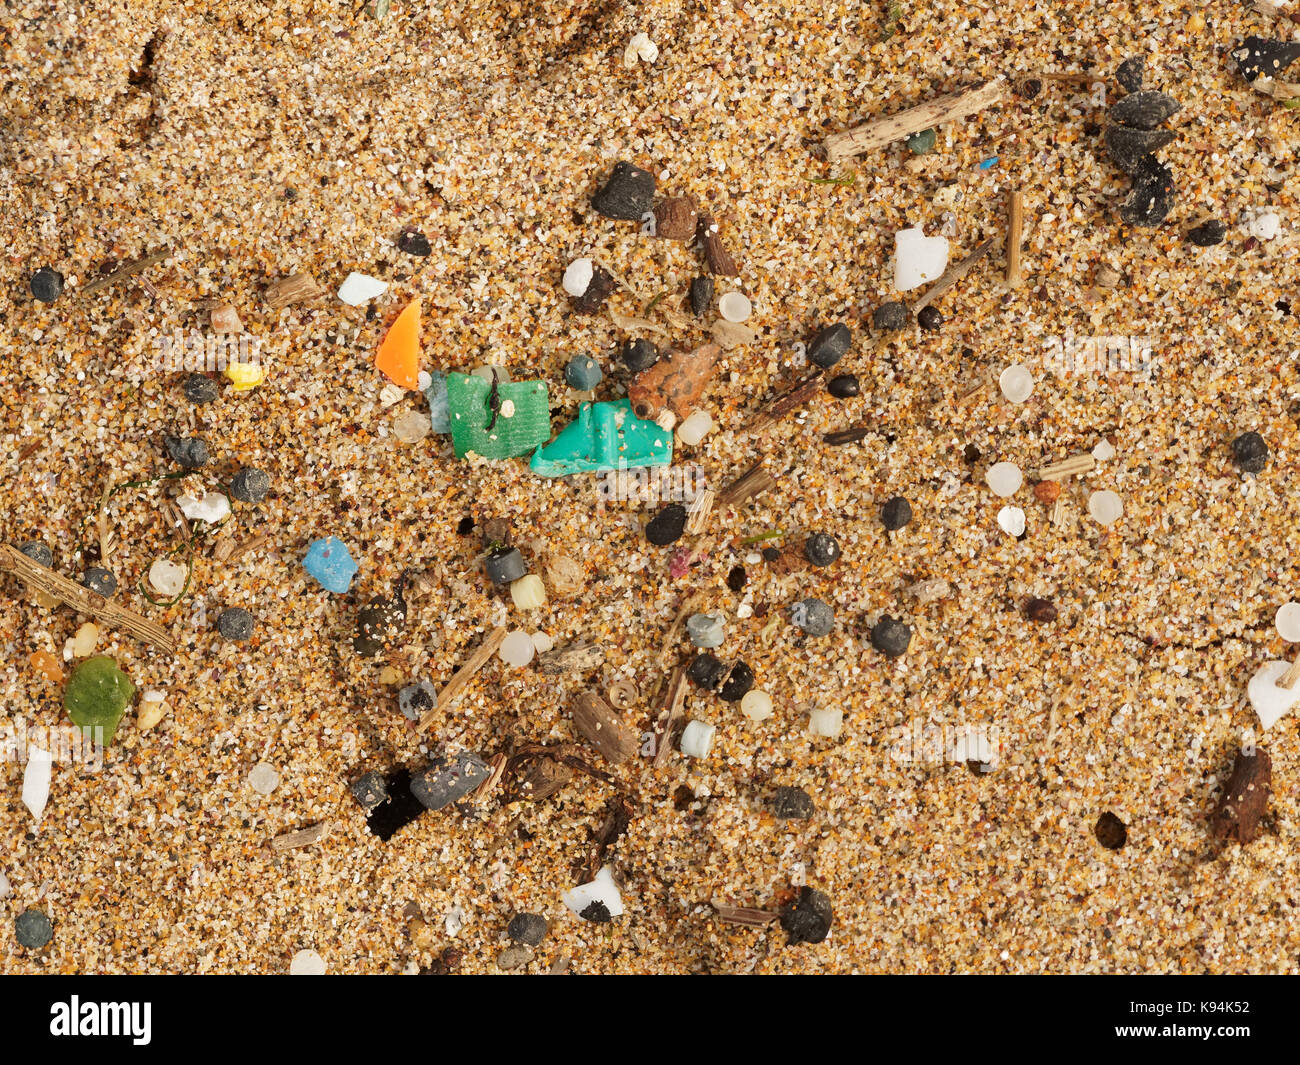 Plages et Piscines roche polluée par des déchets de plastique micro lavés dans de la marée. 21, Septembre, 2017 Robert Taylor/Alamy Live News. Newquay, Banque D'Images